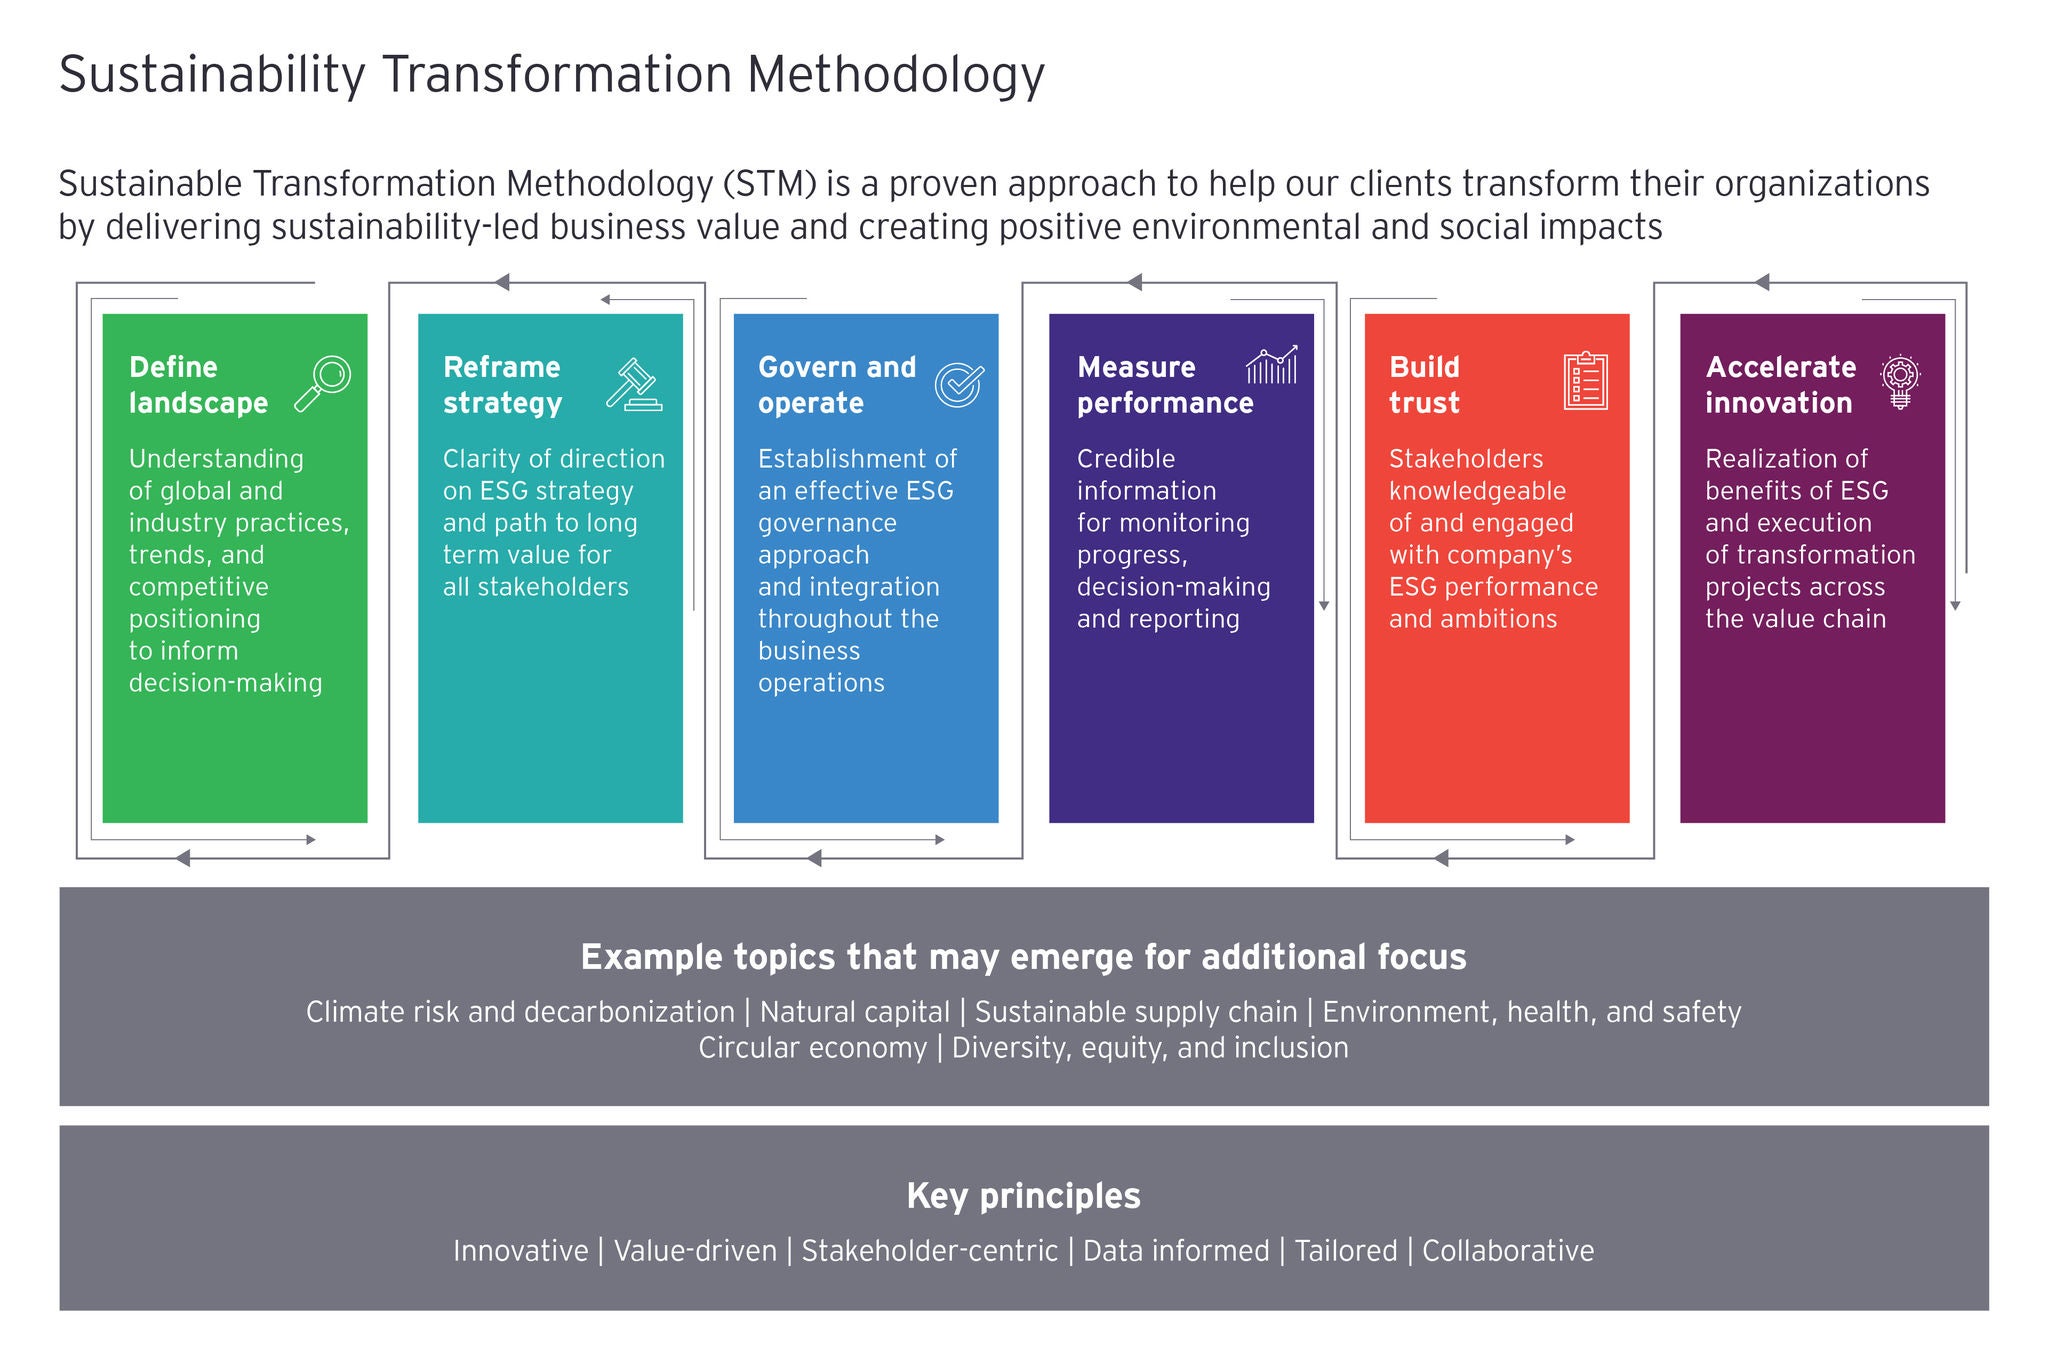 ey-sustainability-transformation-methodology